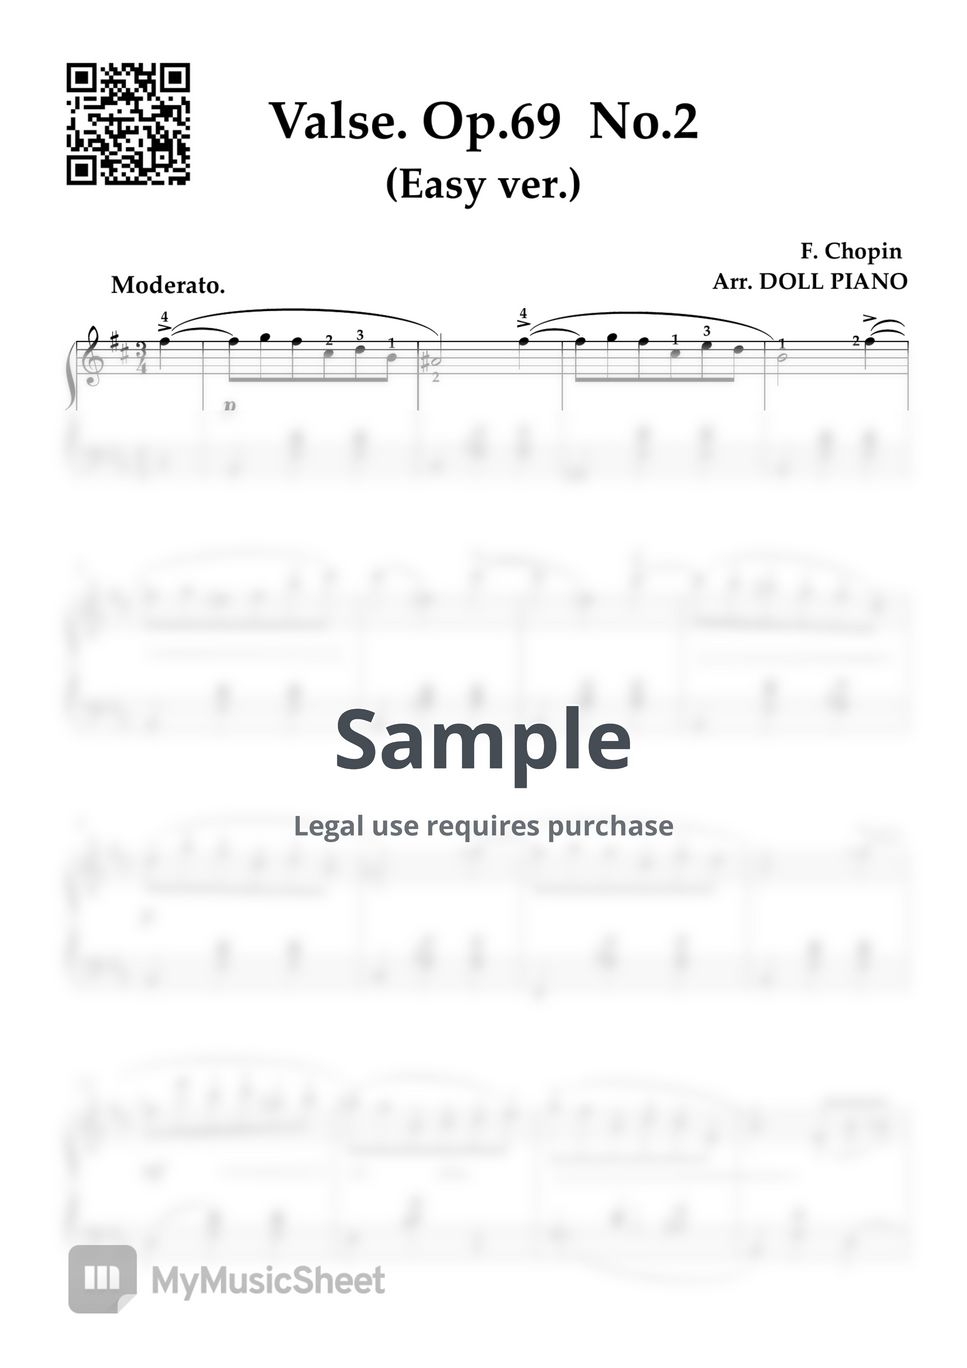 쇼팽 - 쇼팽 왈츠 Op.69 No.2 (쉬운버전, 쉬운키, 원키) by DOLL PIANO